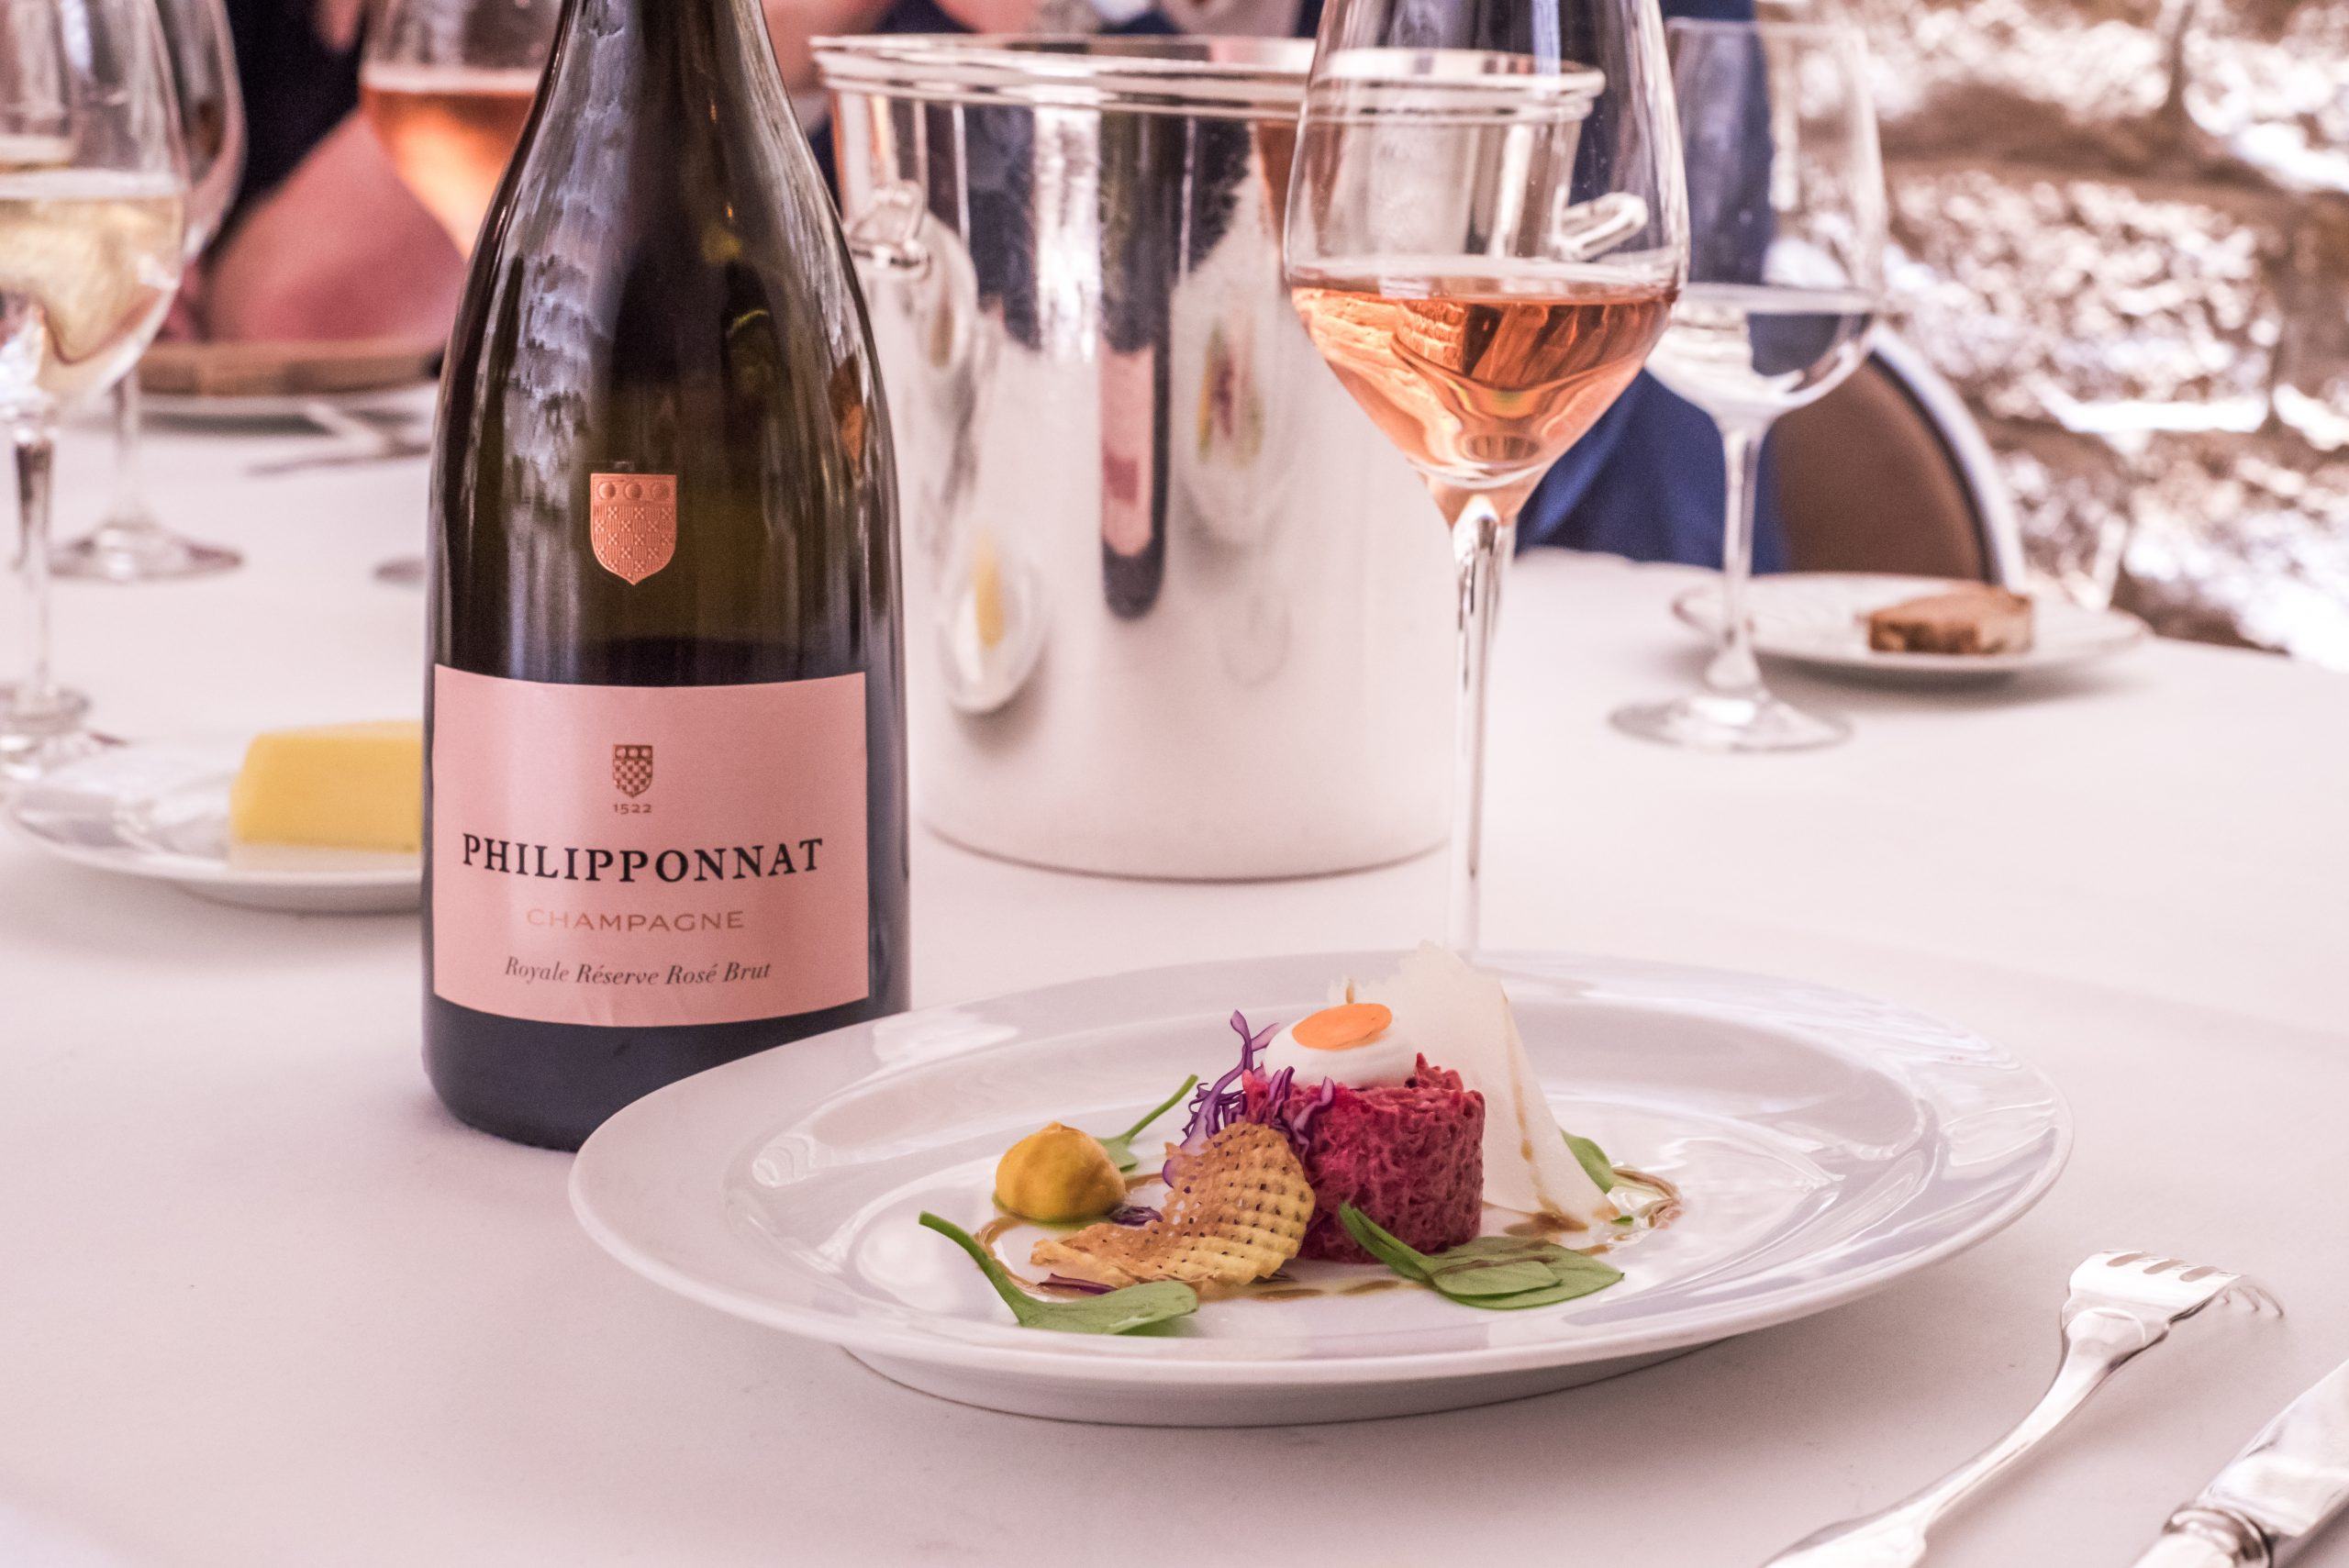 Royale Réserve Brut Rosé - Champagne Philipponnat